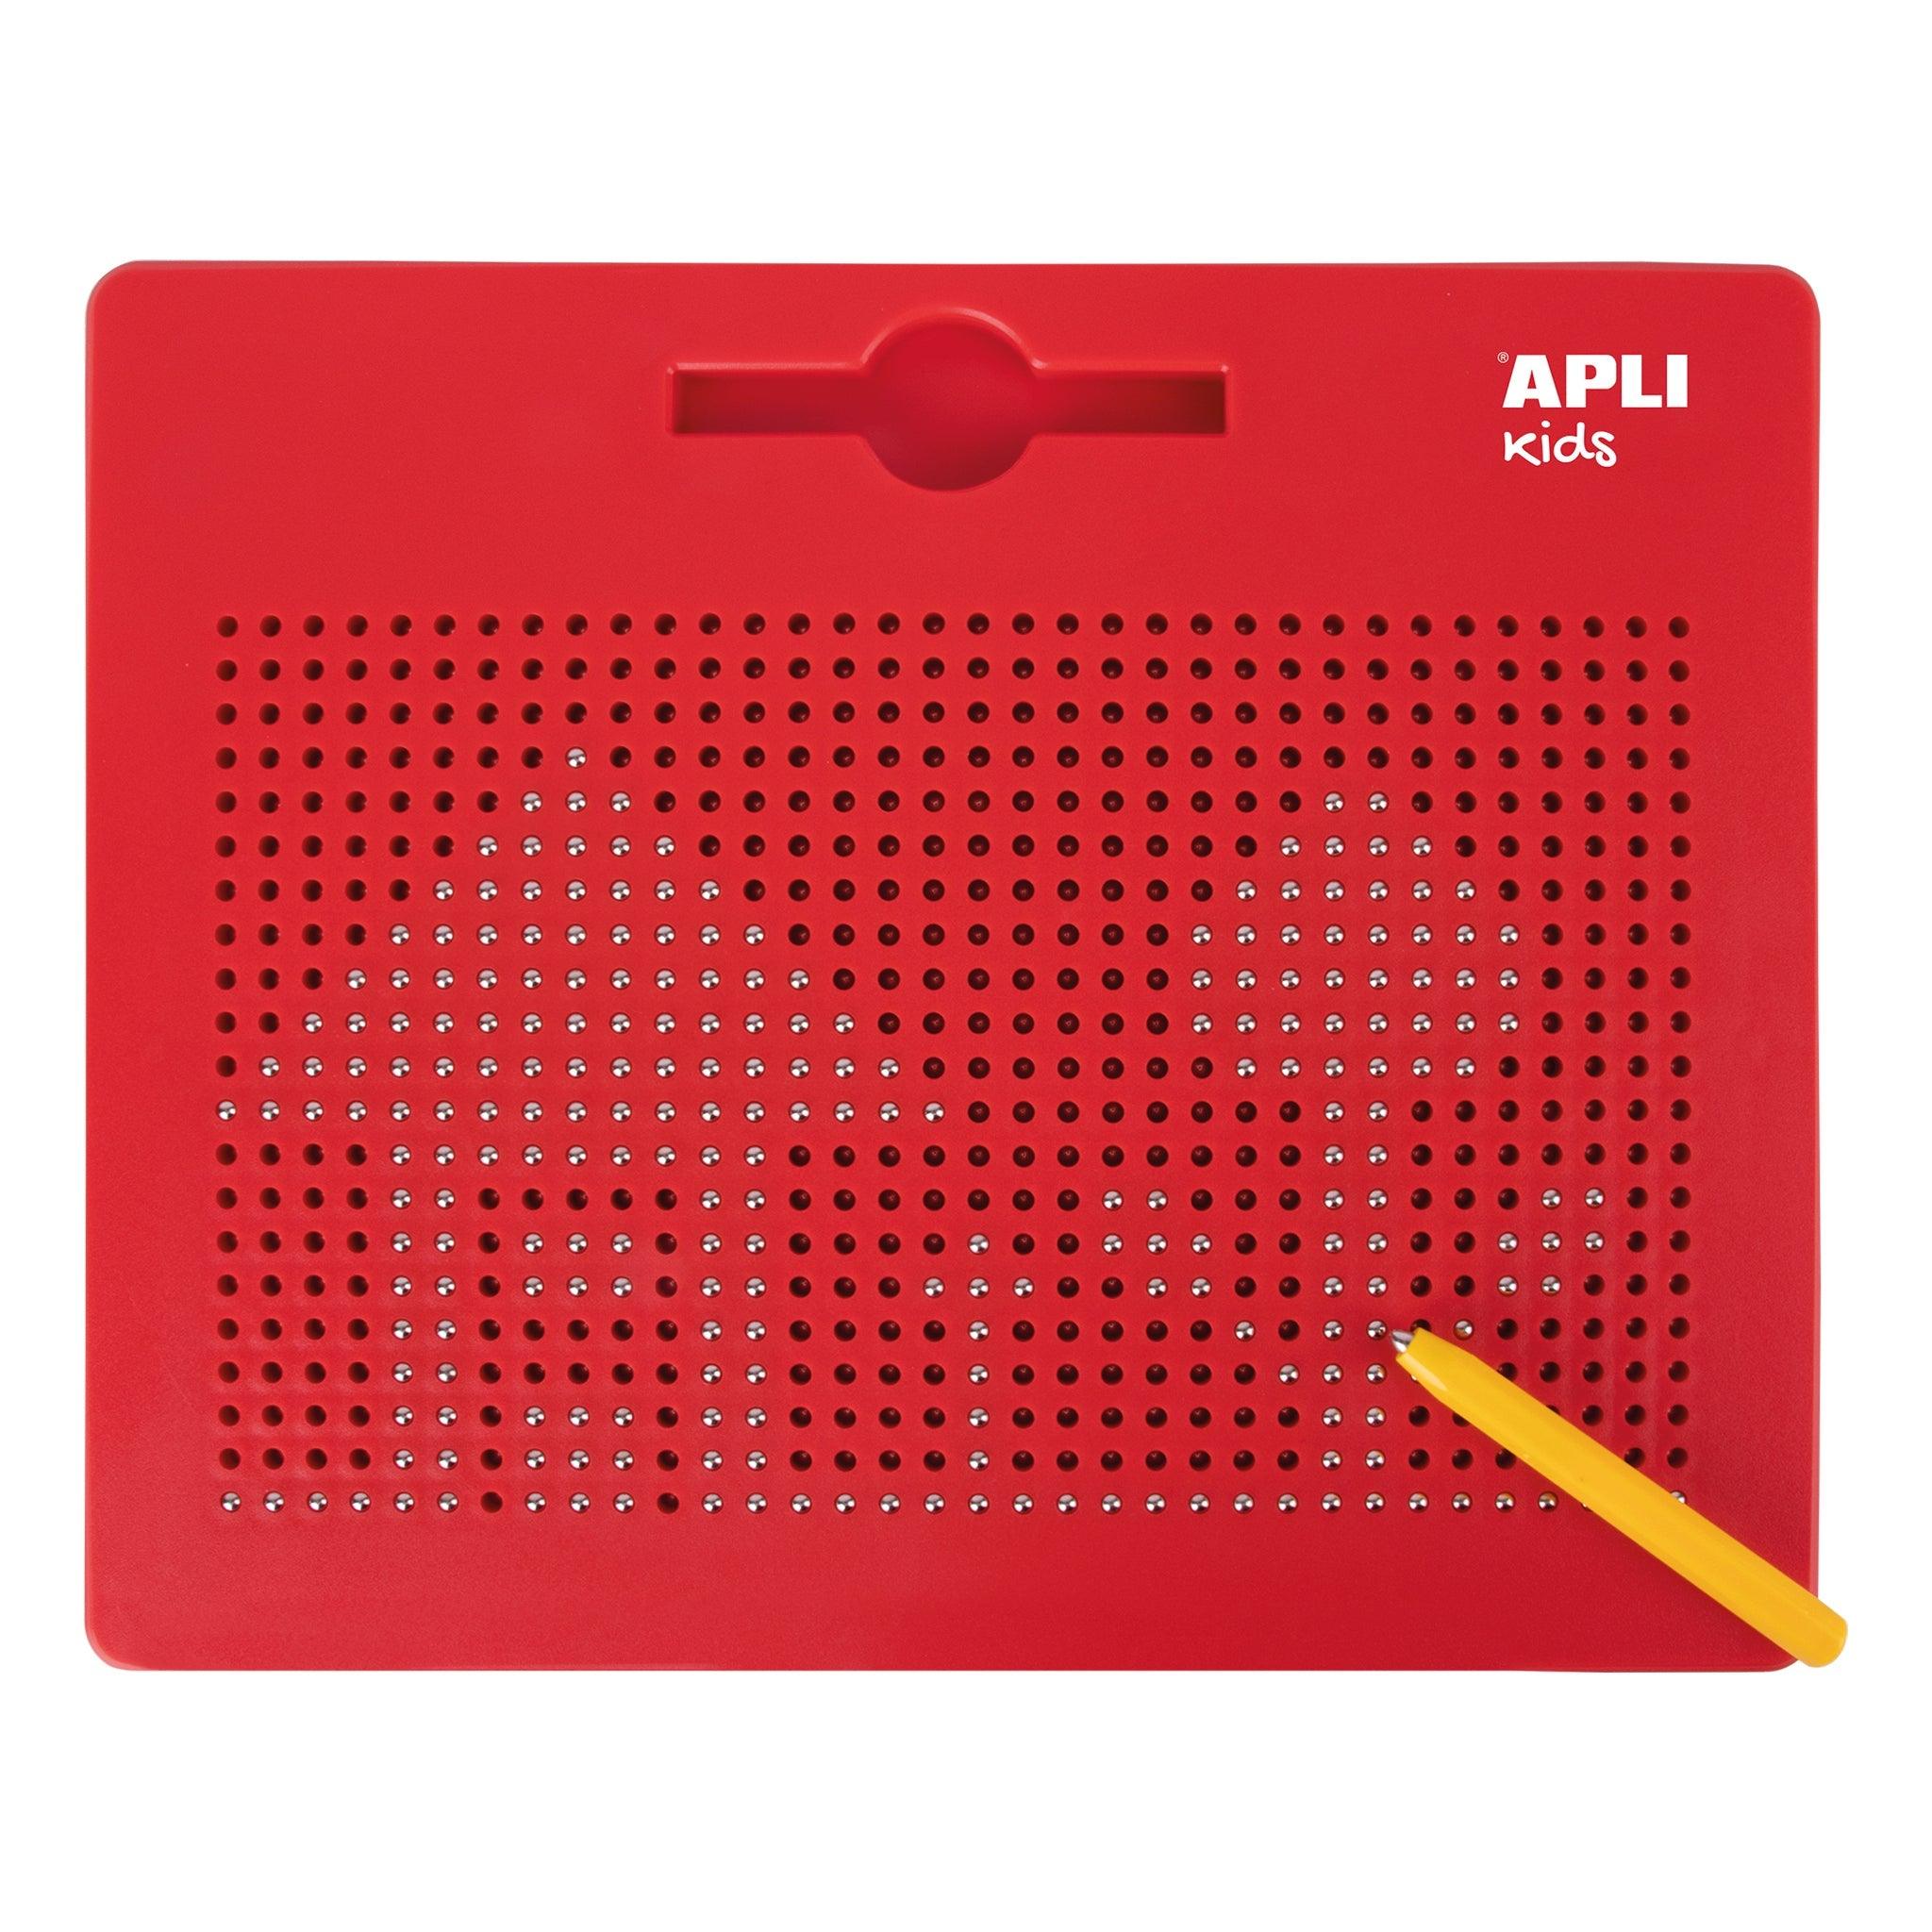 Apli Kids: magnetyczna duża tablica do rysowania Magnetic XL-Board - Noski Noski